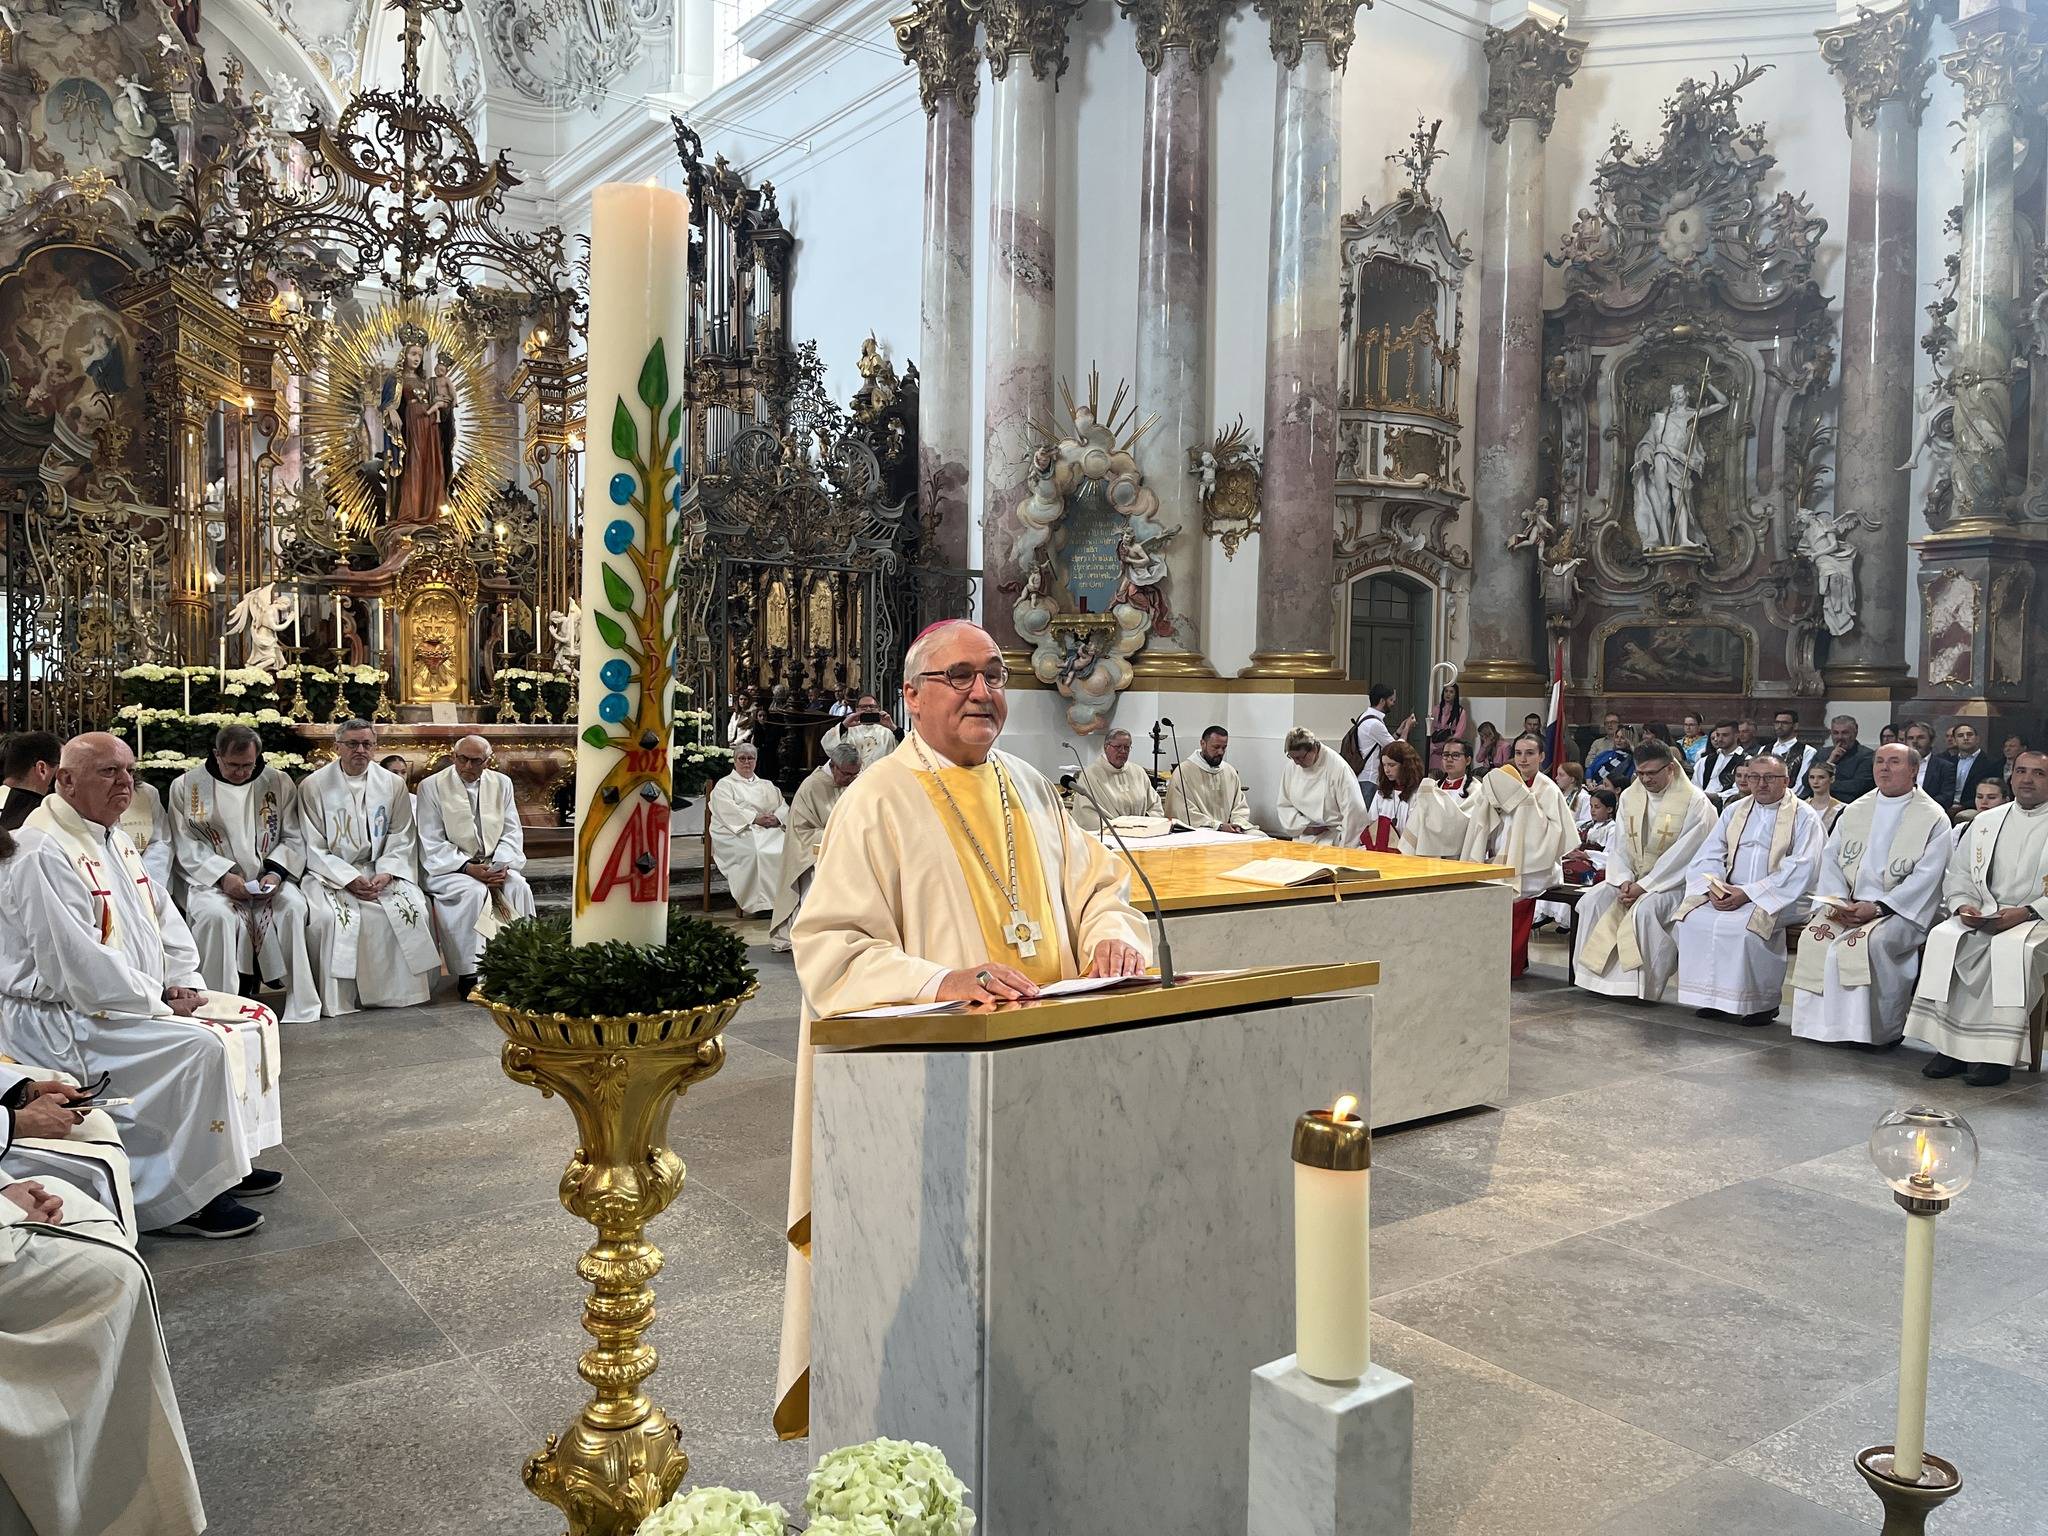 Održano 40. hodočašće hrvatskih katoličkih zajednica iz njemačke biskupije Rottenburg - Stuttgart u marijansko svetište Zwiefalten